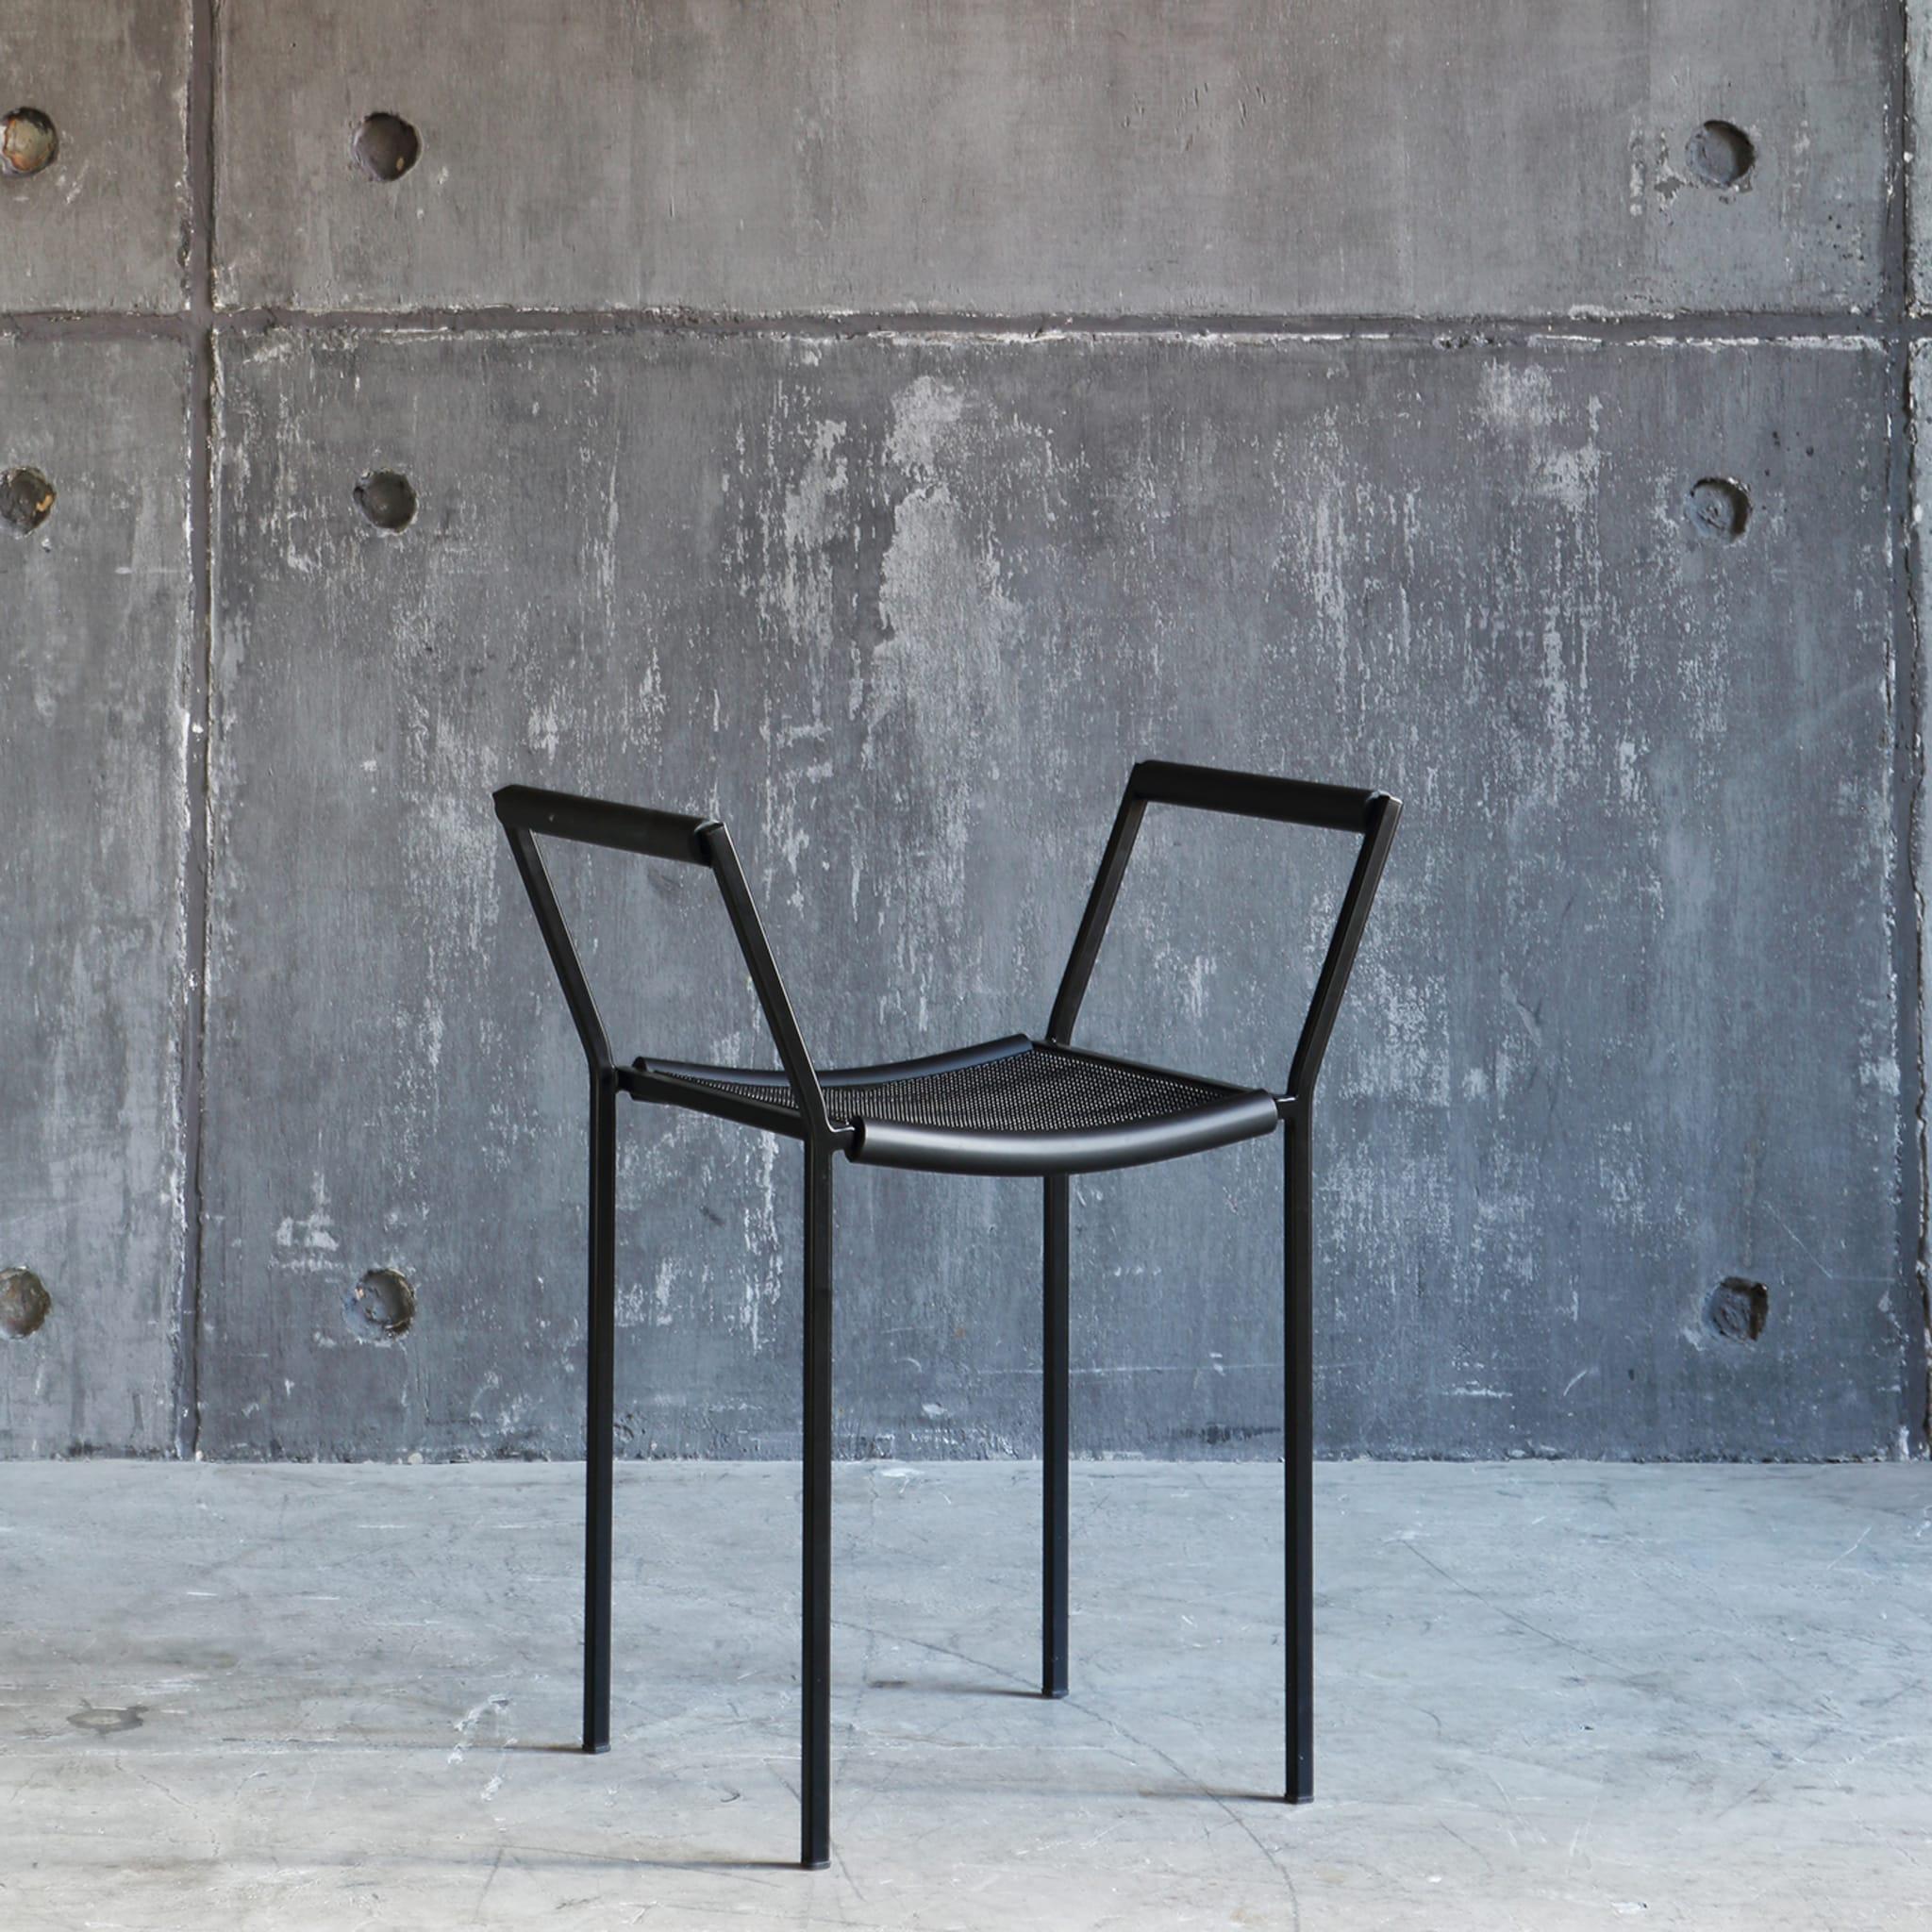 La chaise Savanarola est une version moderne des chaises Empire. Elle est fabriquée dans de nouveaux matériaux qui lui confèrent un caractère unique. Sur une structure en acier pur, la chaise est revêtue d'une finition noire semi-opaque. L'assise et